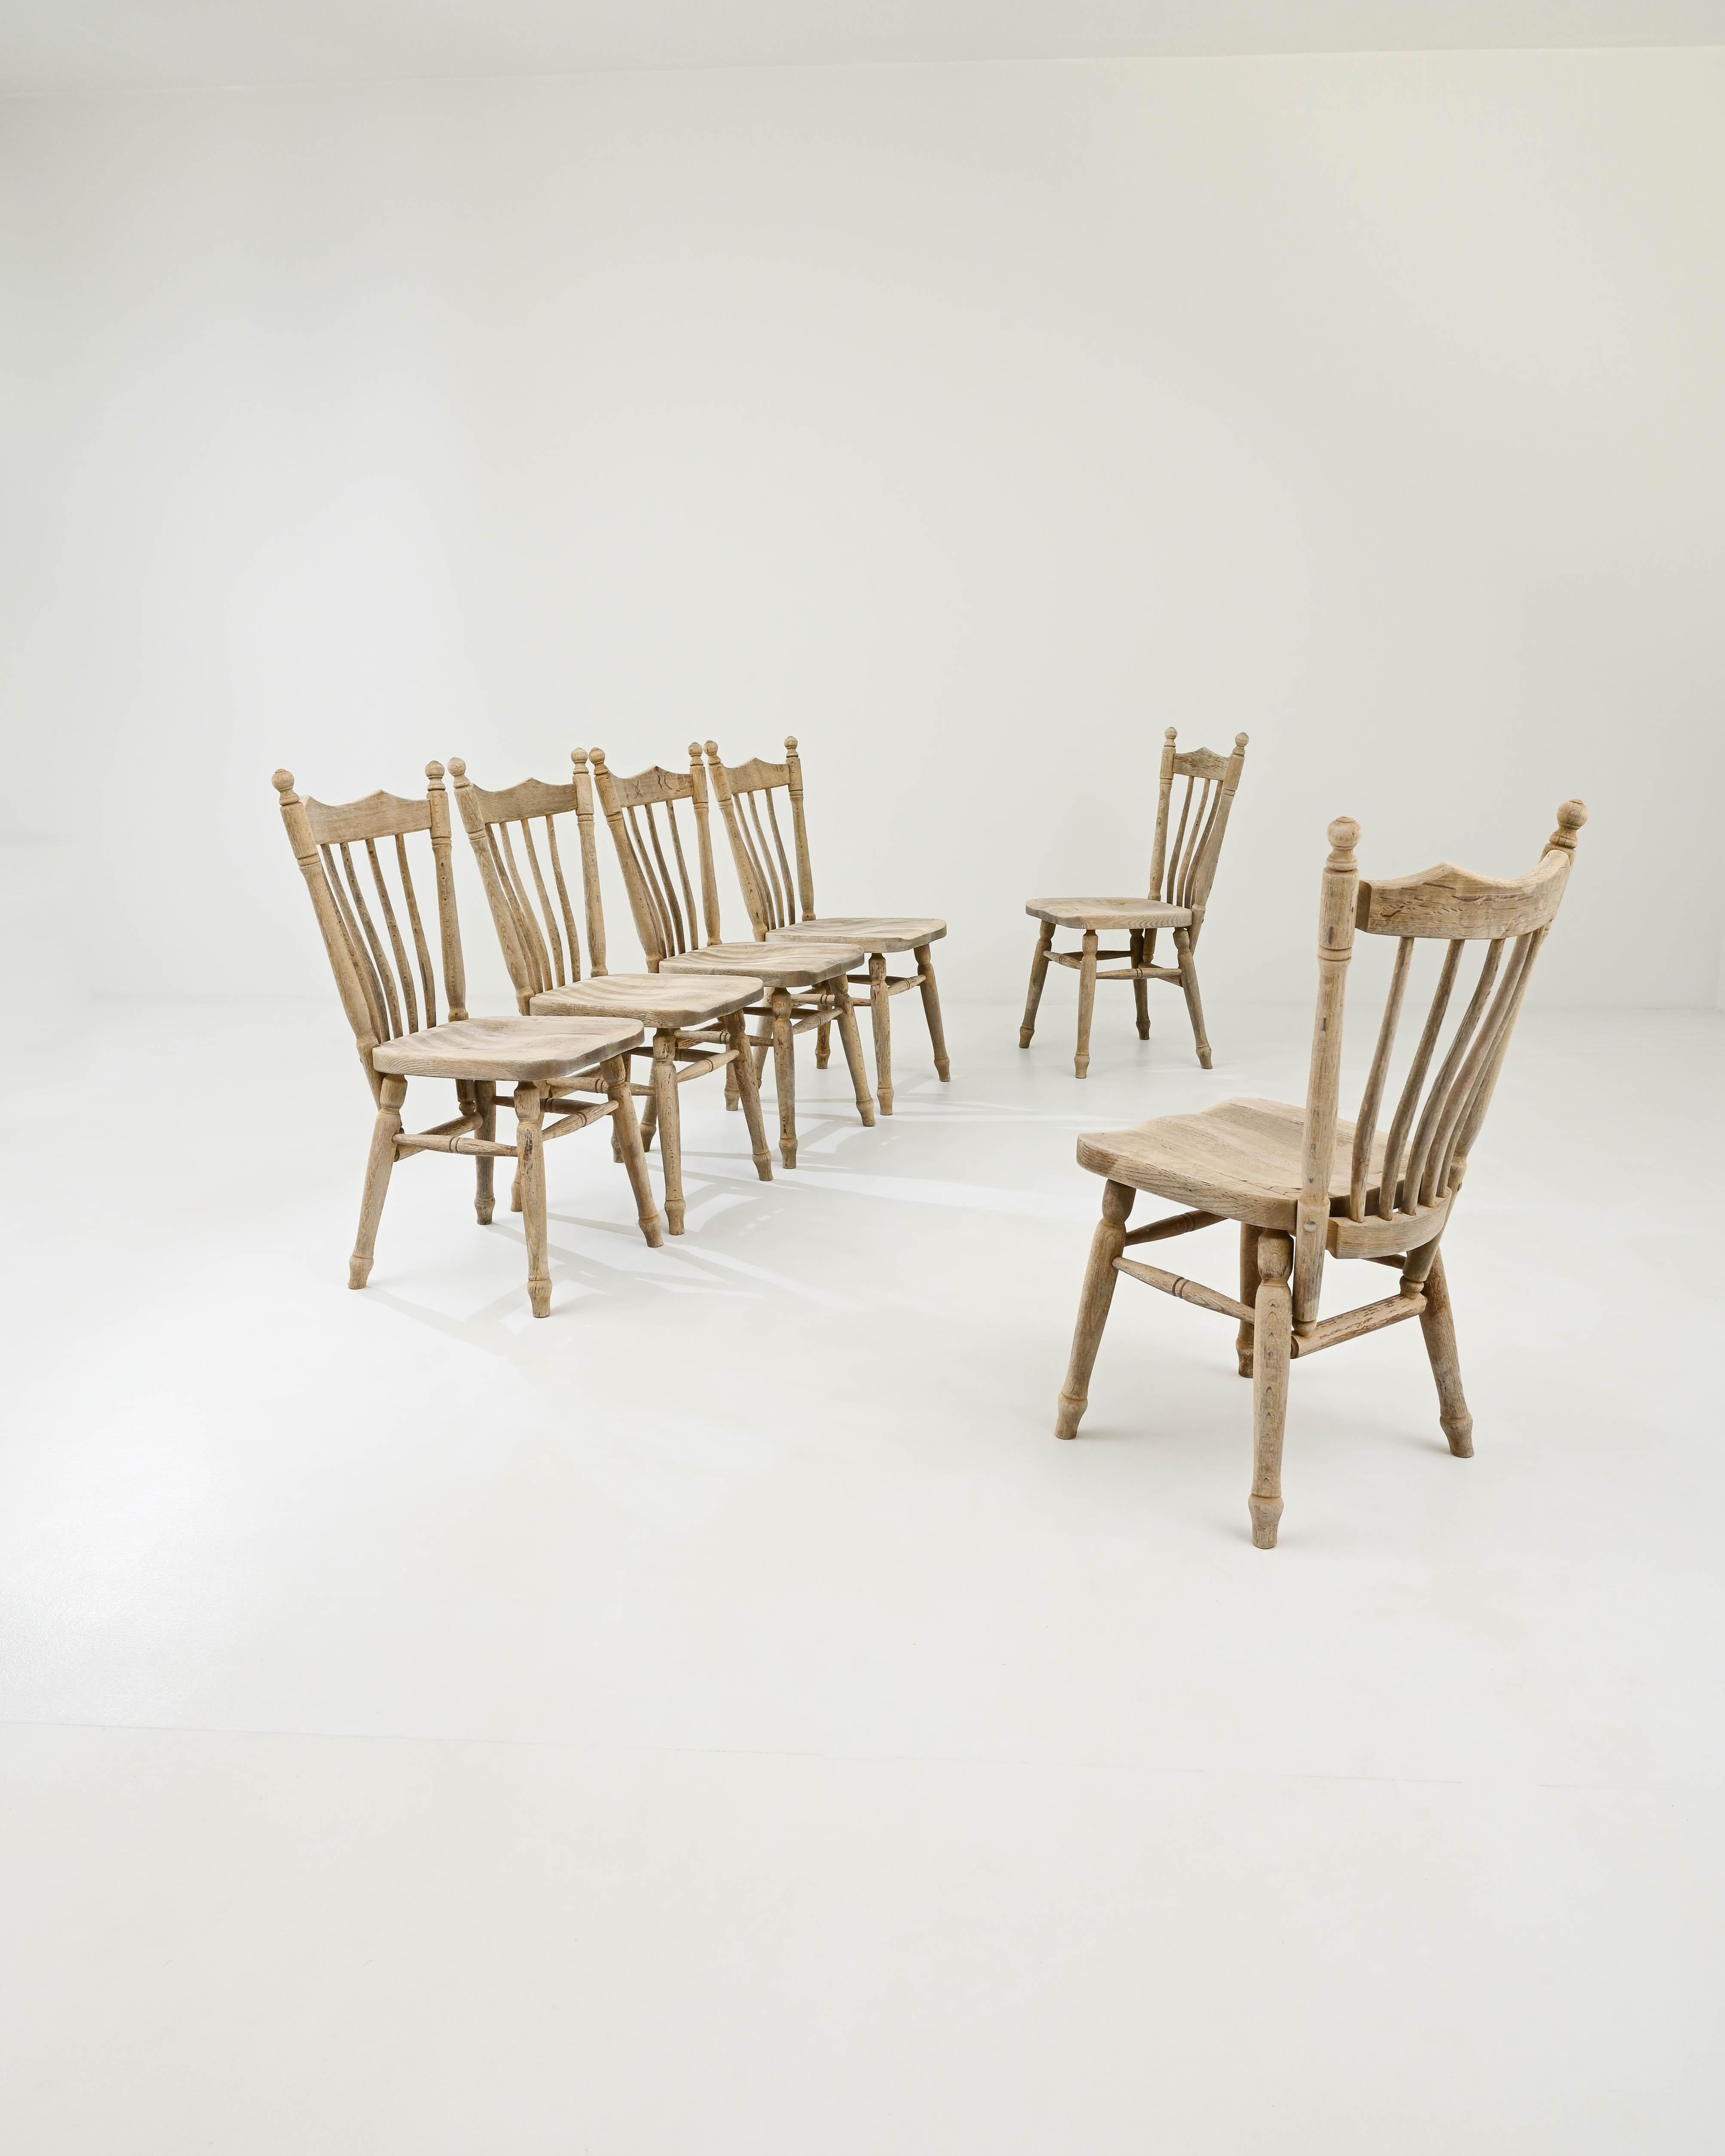 Un ensemble de chaises de salle à manger en bois créées en Belgique au 20e siècle. Créées dans le style classique des fermes belges, ces chaises dégagent une certaine dignité, tout en invitant à s'asseoir avec une chaleur palpable. Les supports de